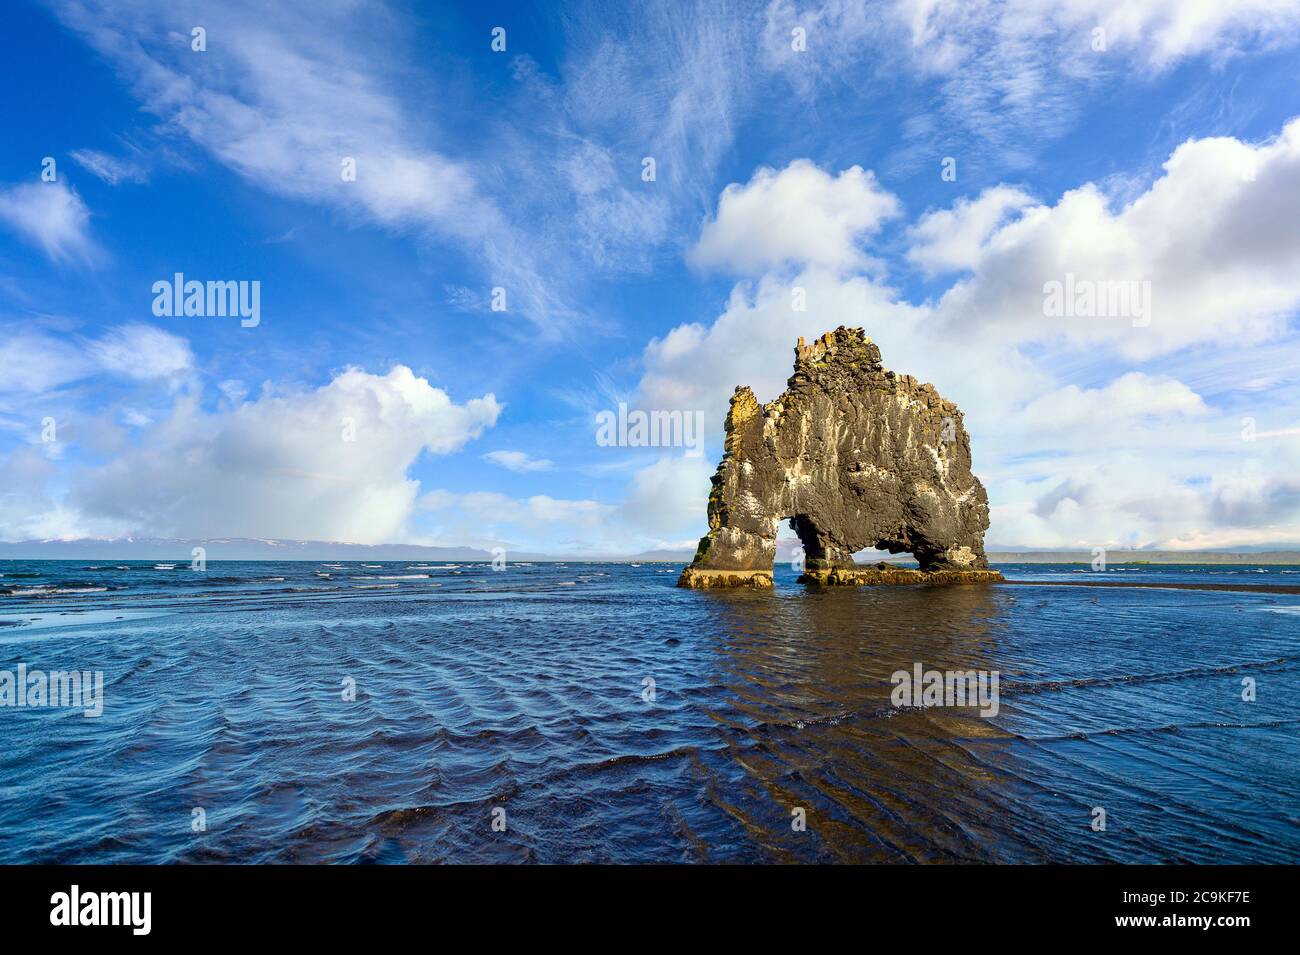 Hvitserkur est une étrange pierre en forme de dragon et de monstre. Sur la côte nord de l'Islande, sur un ciel bleu clair et de beaux nuages, cet endroit Banque D'Images